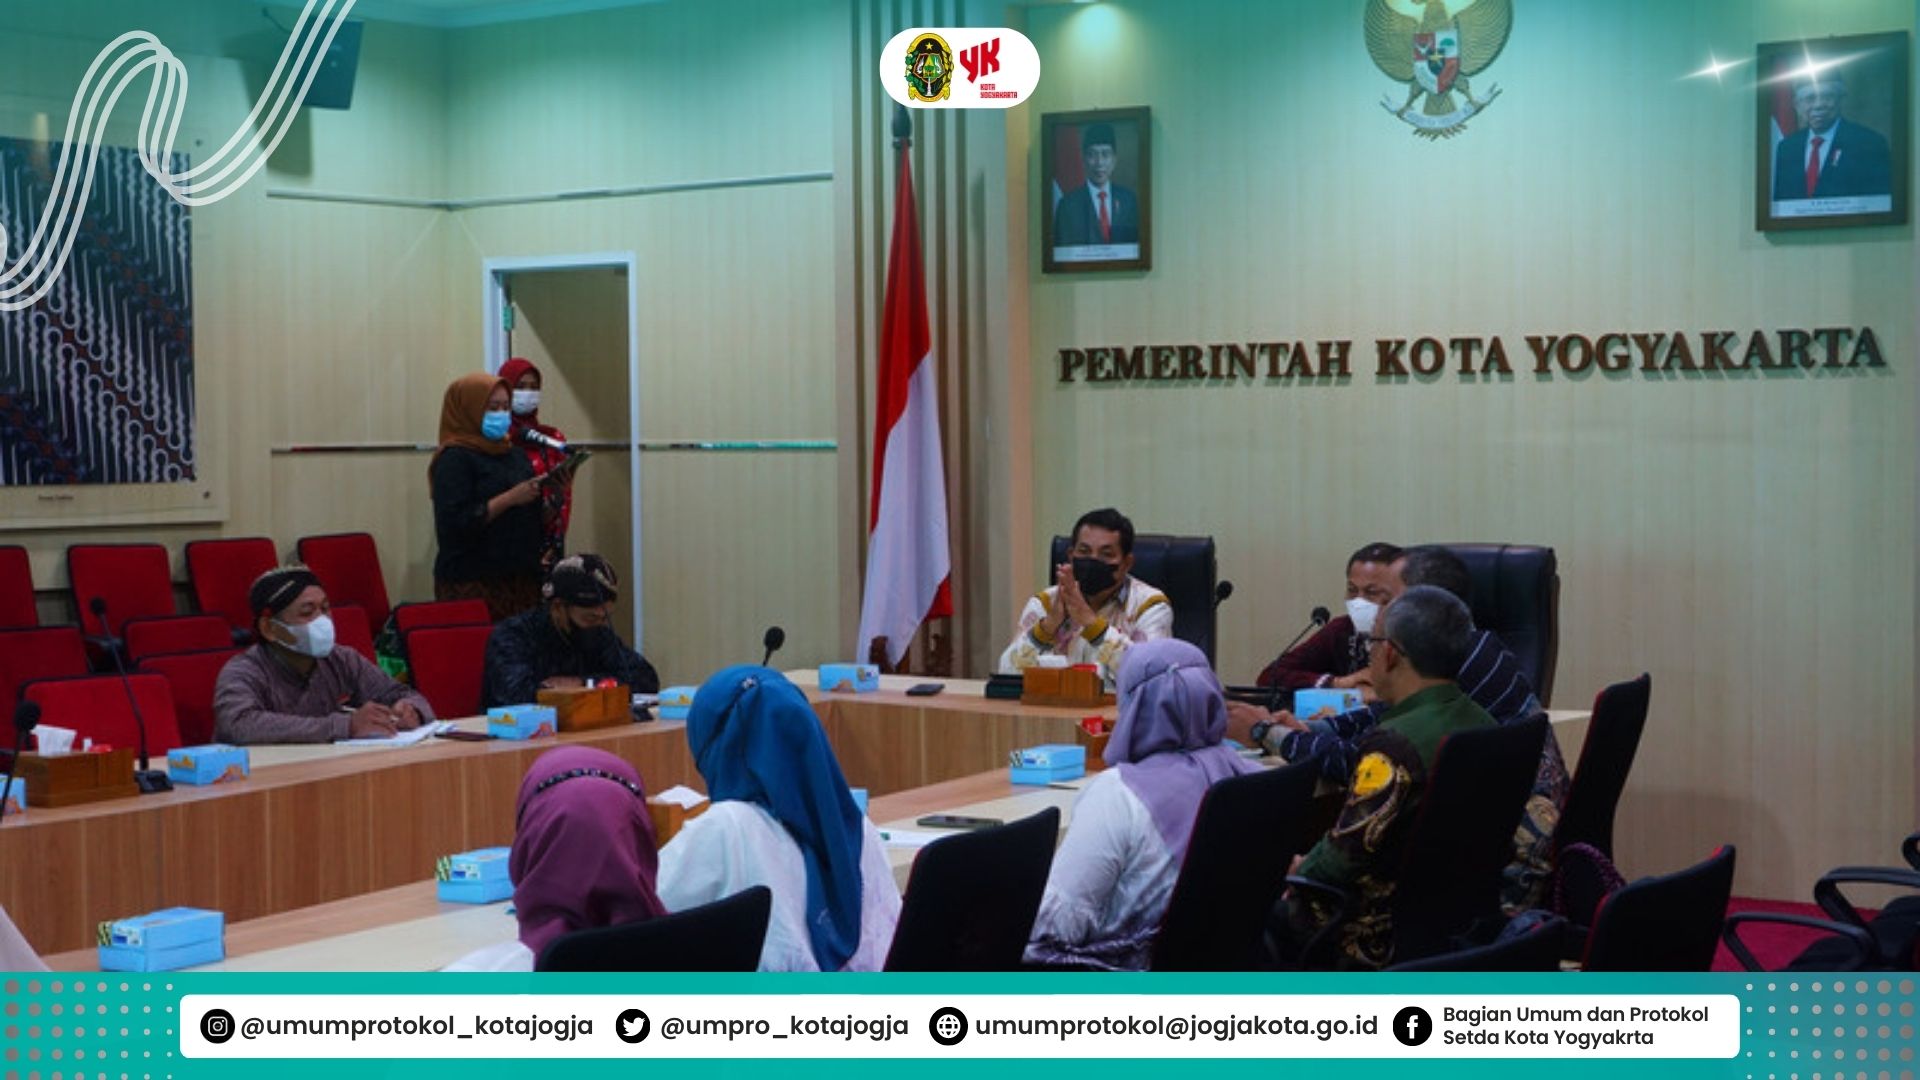 Studi Referensi Tunjungan Guru Pemerintah Kota Banjarbaru Kalimantan Selatan di Kota Yogyakarta